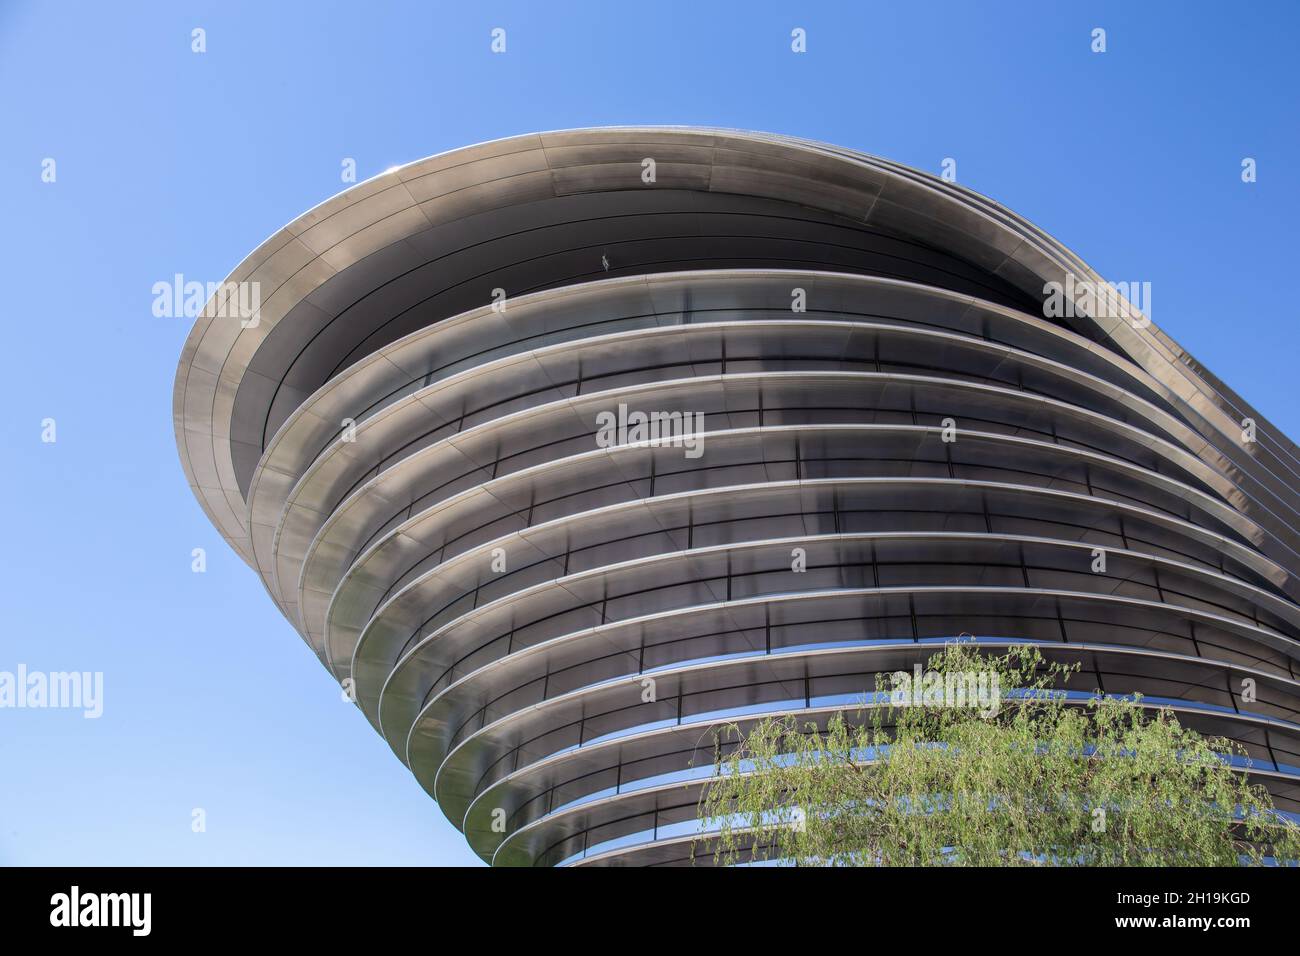 Dubai, VAE, 17.10.2021. Alif - The Mobility Pavilion auf dem Gelände der Expo 2020, modernes futuristisches Gebäude vor blauem Himmel. Stockfoto